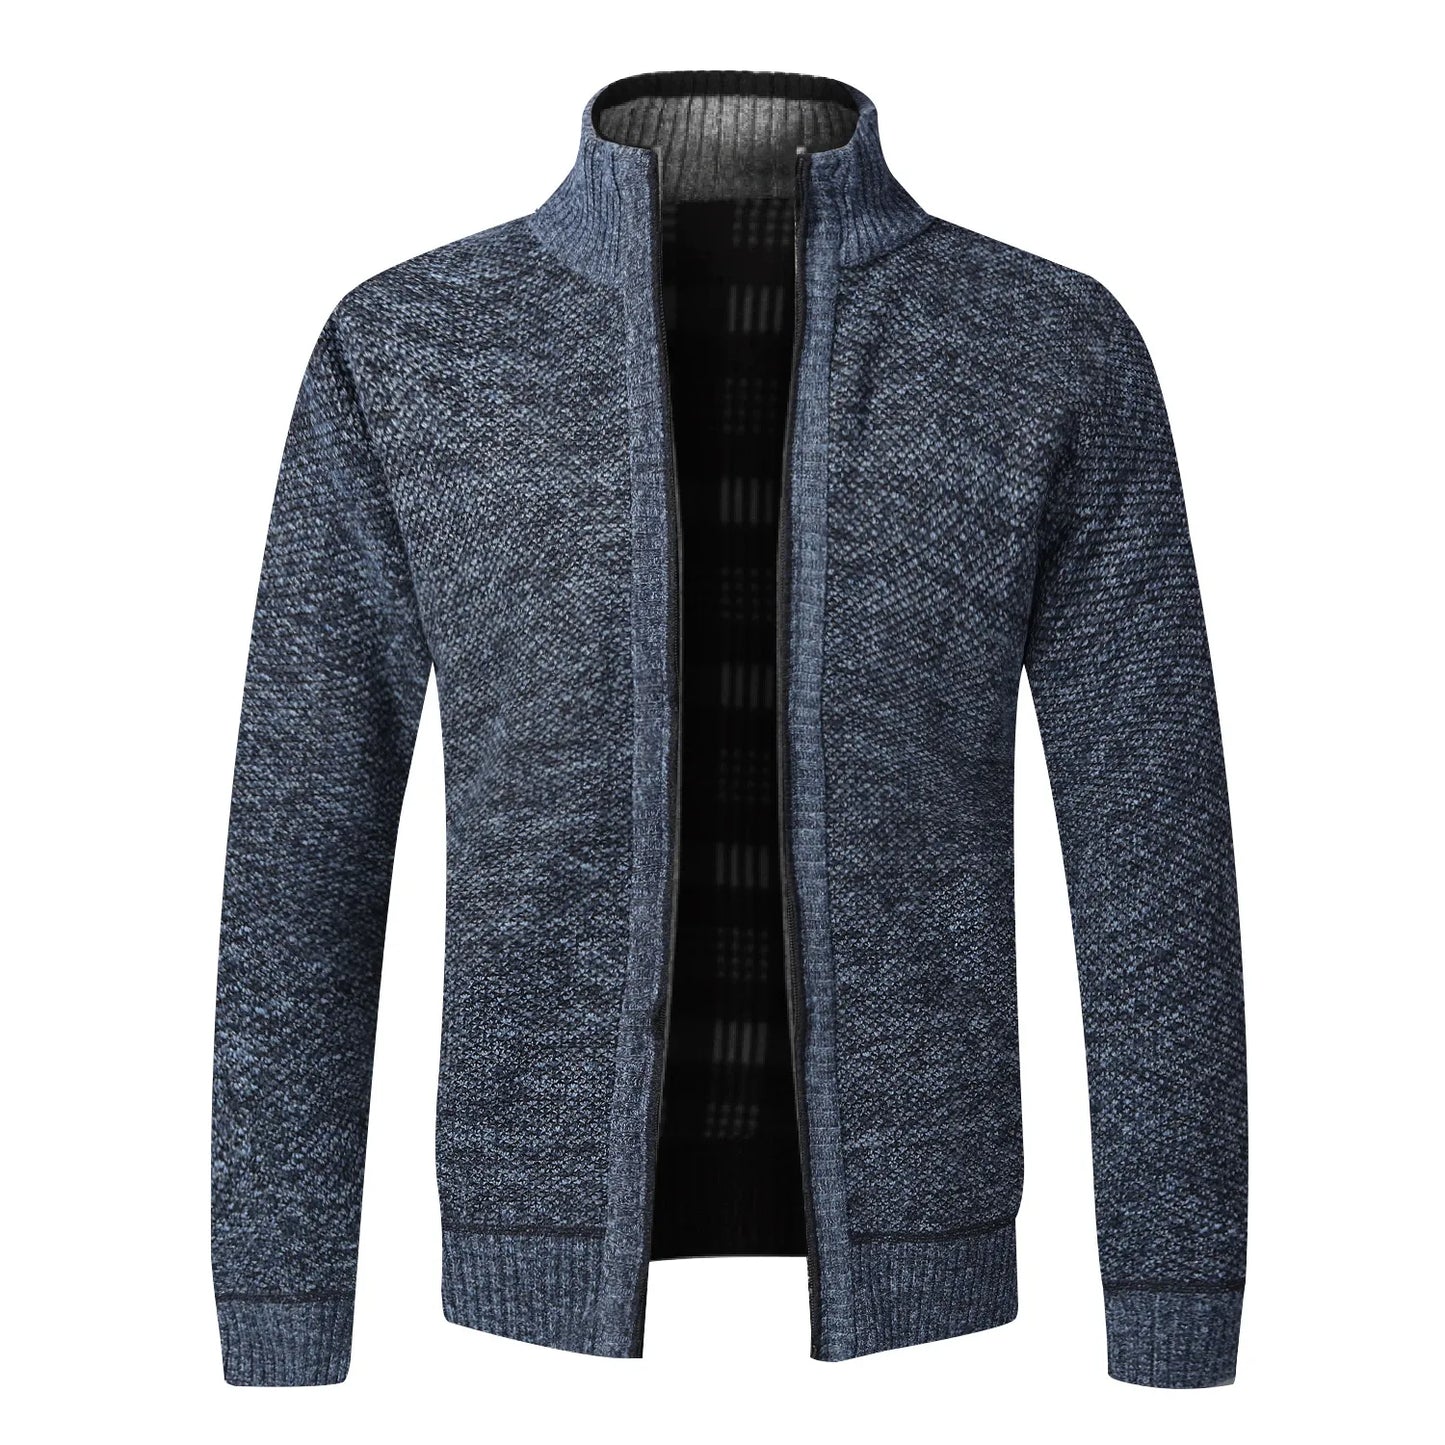 TEEK - Warm Knitted Zipper Sweater Jacket JACKET theteekdotcom blue US XS | Tag M 